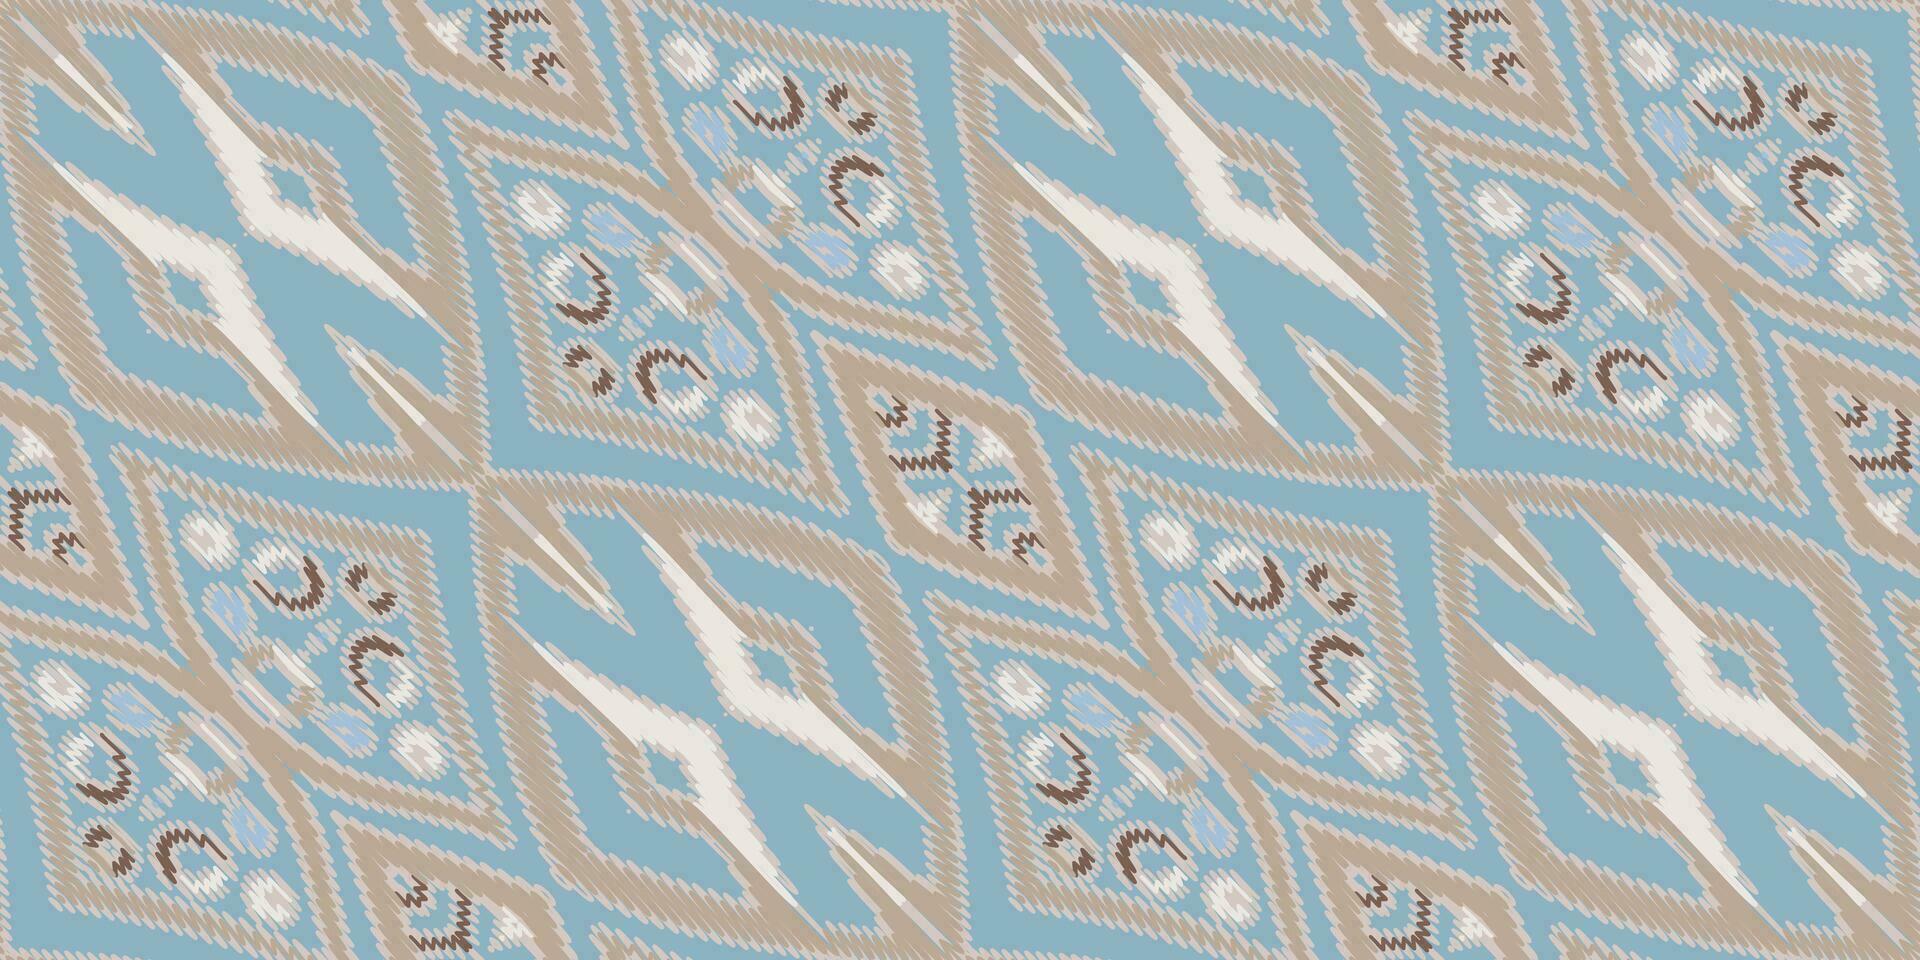 silke tyg patola sari mönster sömlös inföding amerikansk, motiv broderi, ikat broderi vektor design för skriva ut mönster årgång blomma folk navajo patchwork mönster